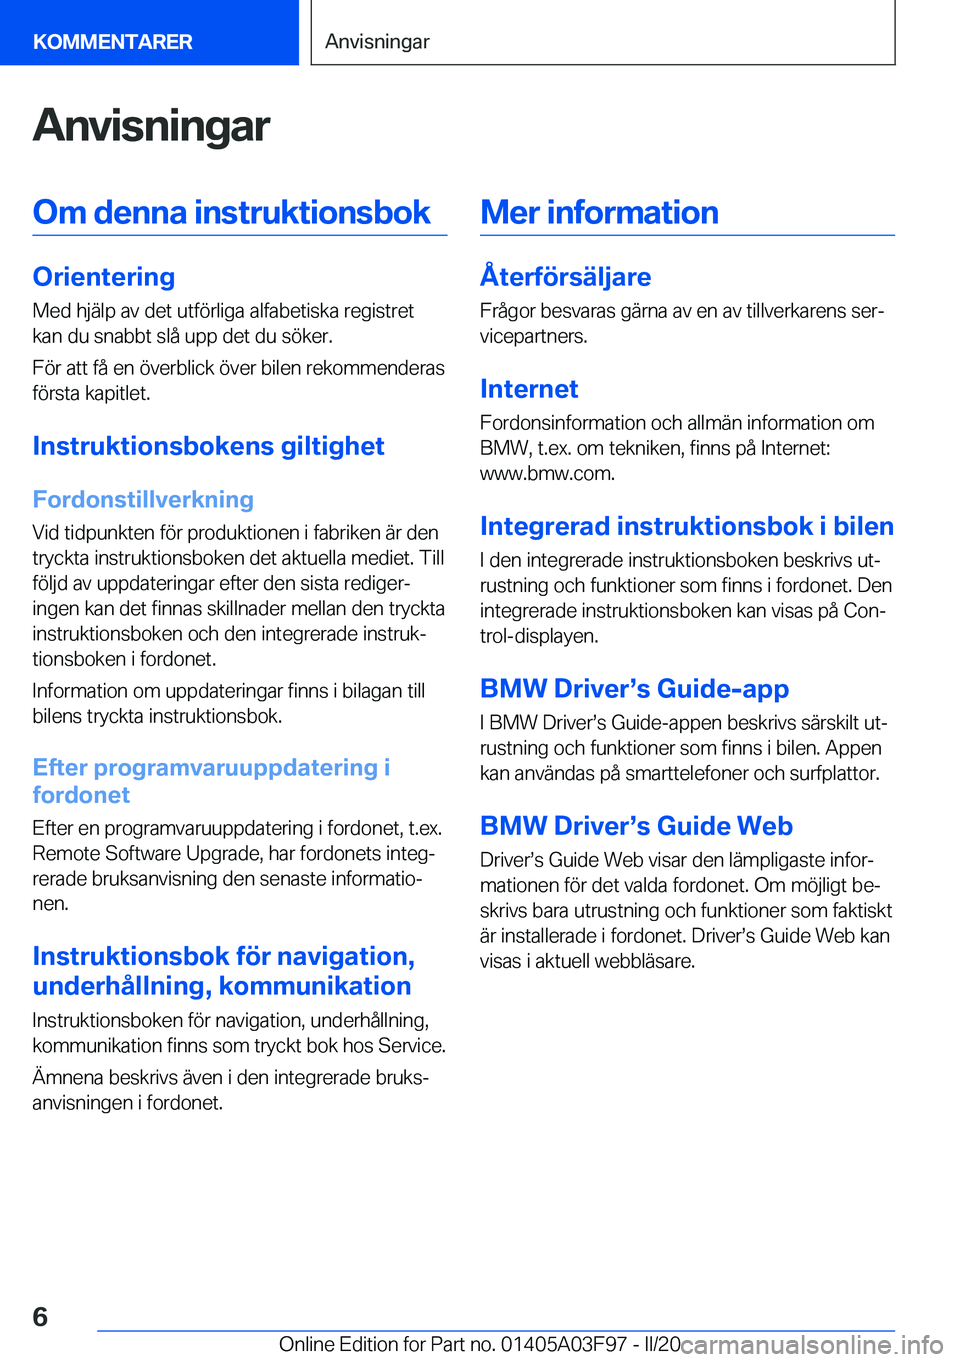 BMW 3 SERIES 2020  InstruktionsbÖcker (in Swedish) �A�n�v�i�s�n�i�n�g�a�r�O�m��d�e�n�n�a��i�n�s�t�r�u�k�t�i�o�n�s�b�o�k
�O�r�i�e�n�t�e�r�i�n�g
�M�e�d��h�j�ä�l�p��a�v��d�e�t��u�t�f�